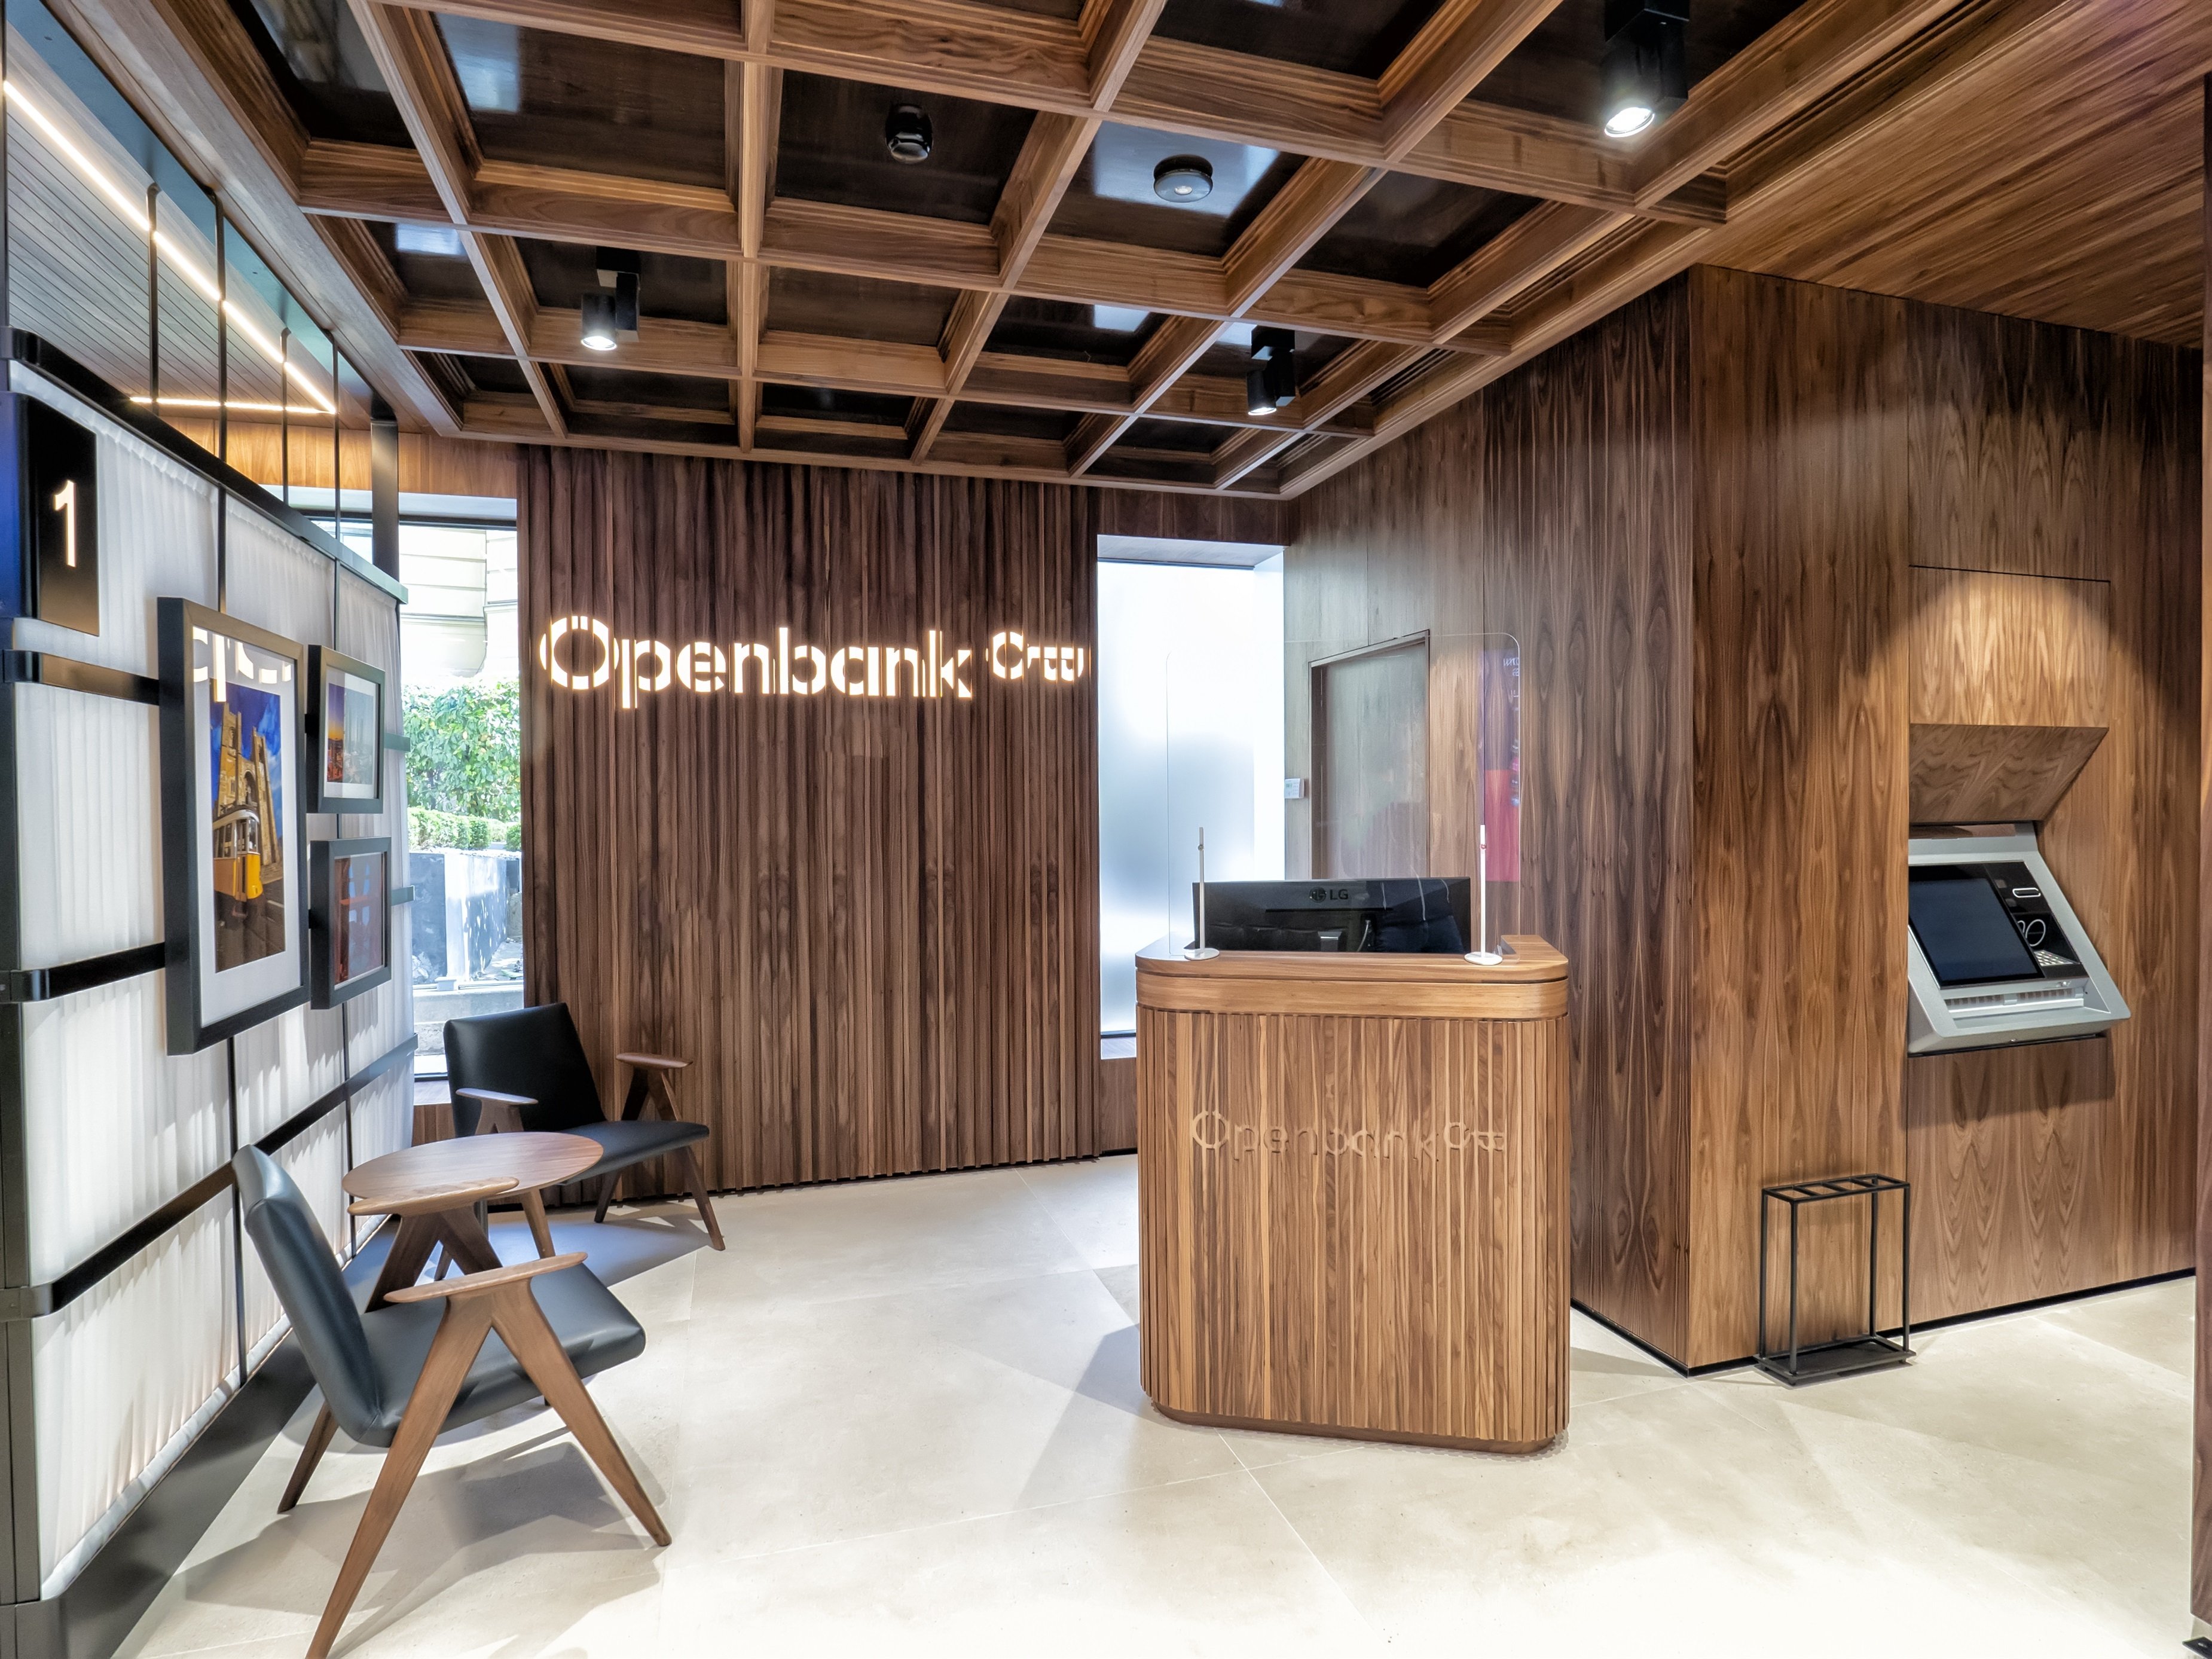 Openbank, Banca March i Targobank s'avancen als grans amb dipòsits al 2%